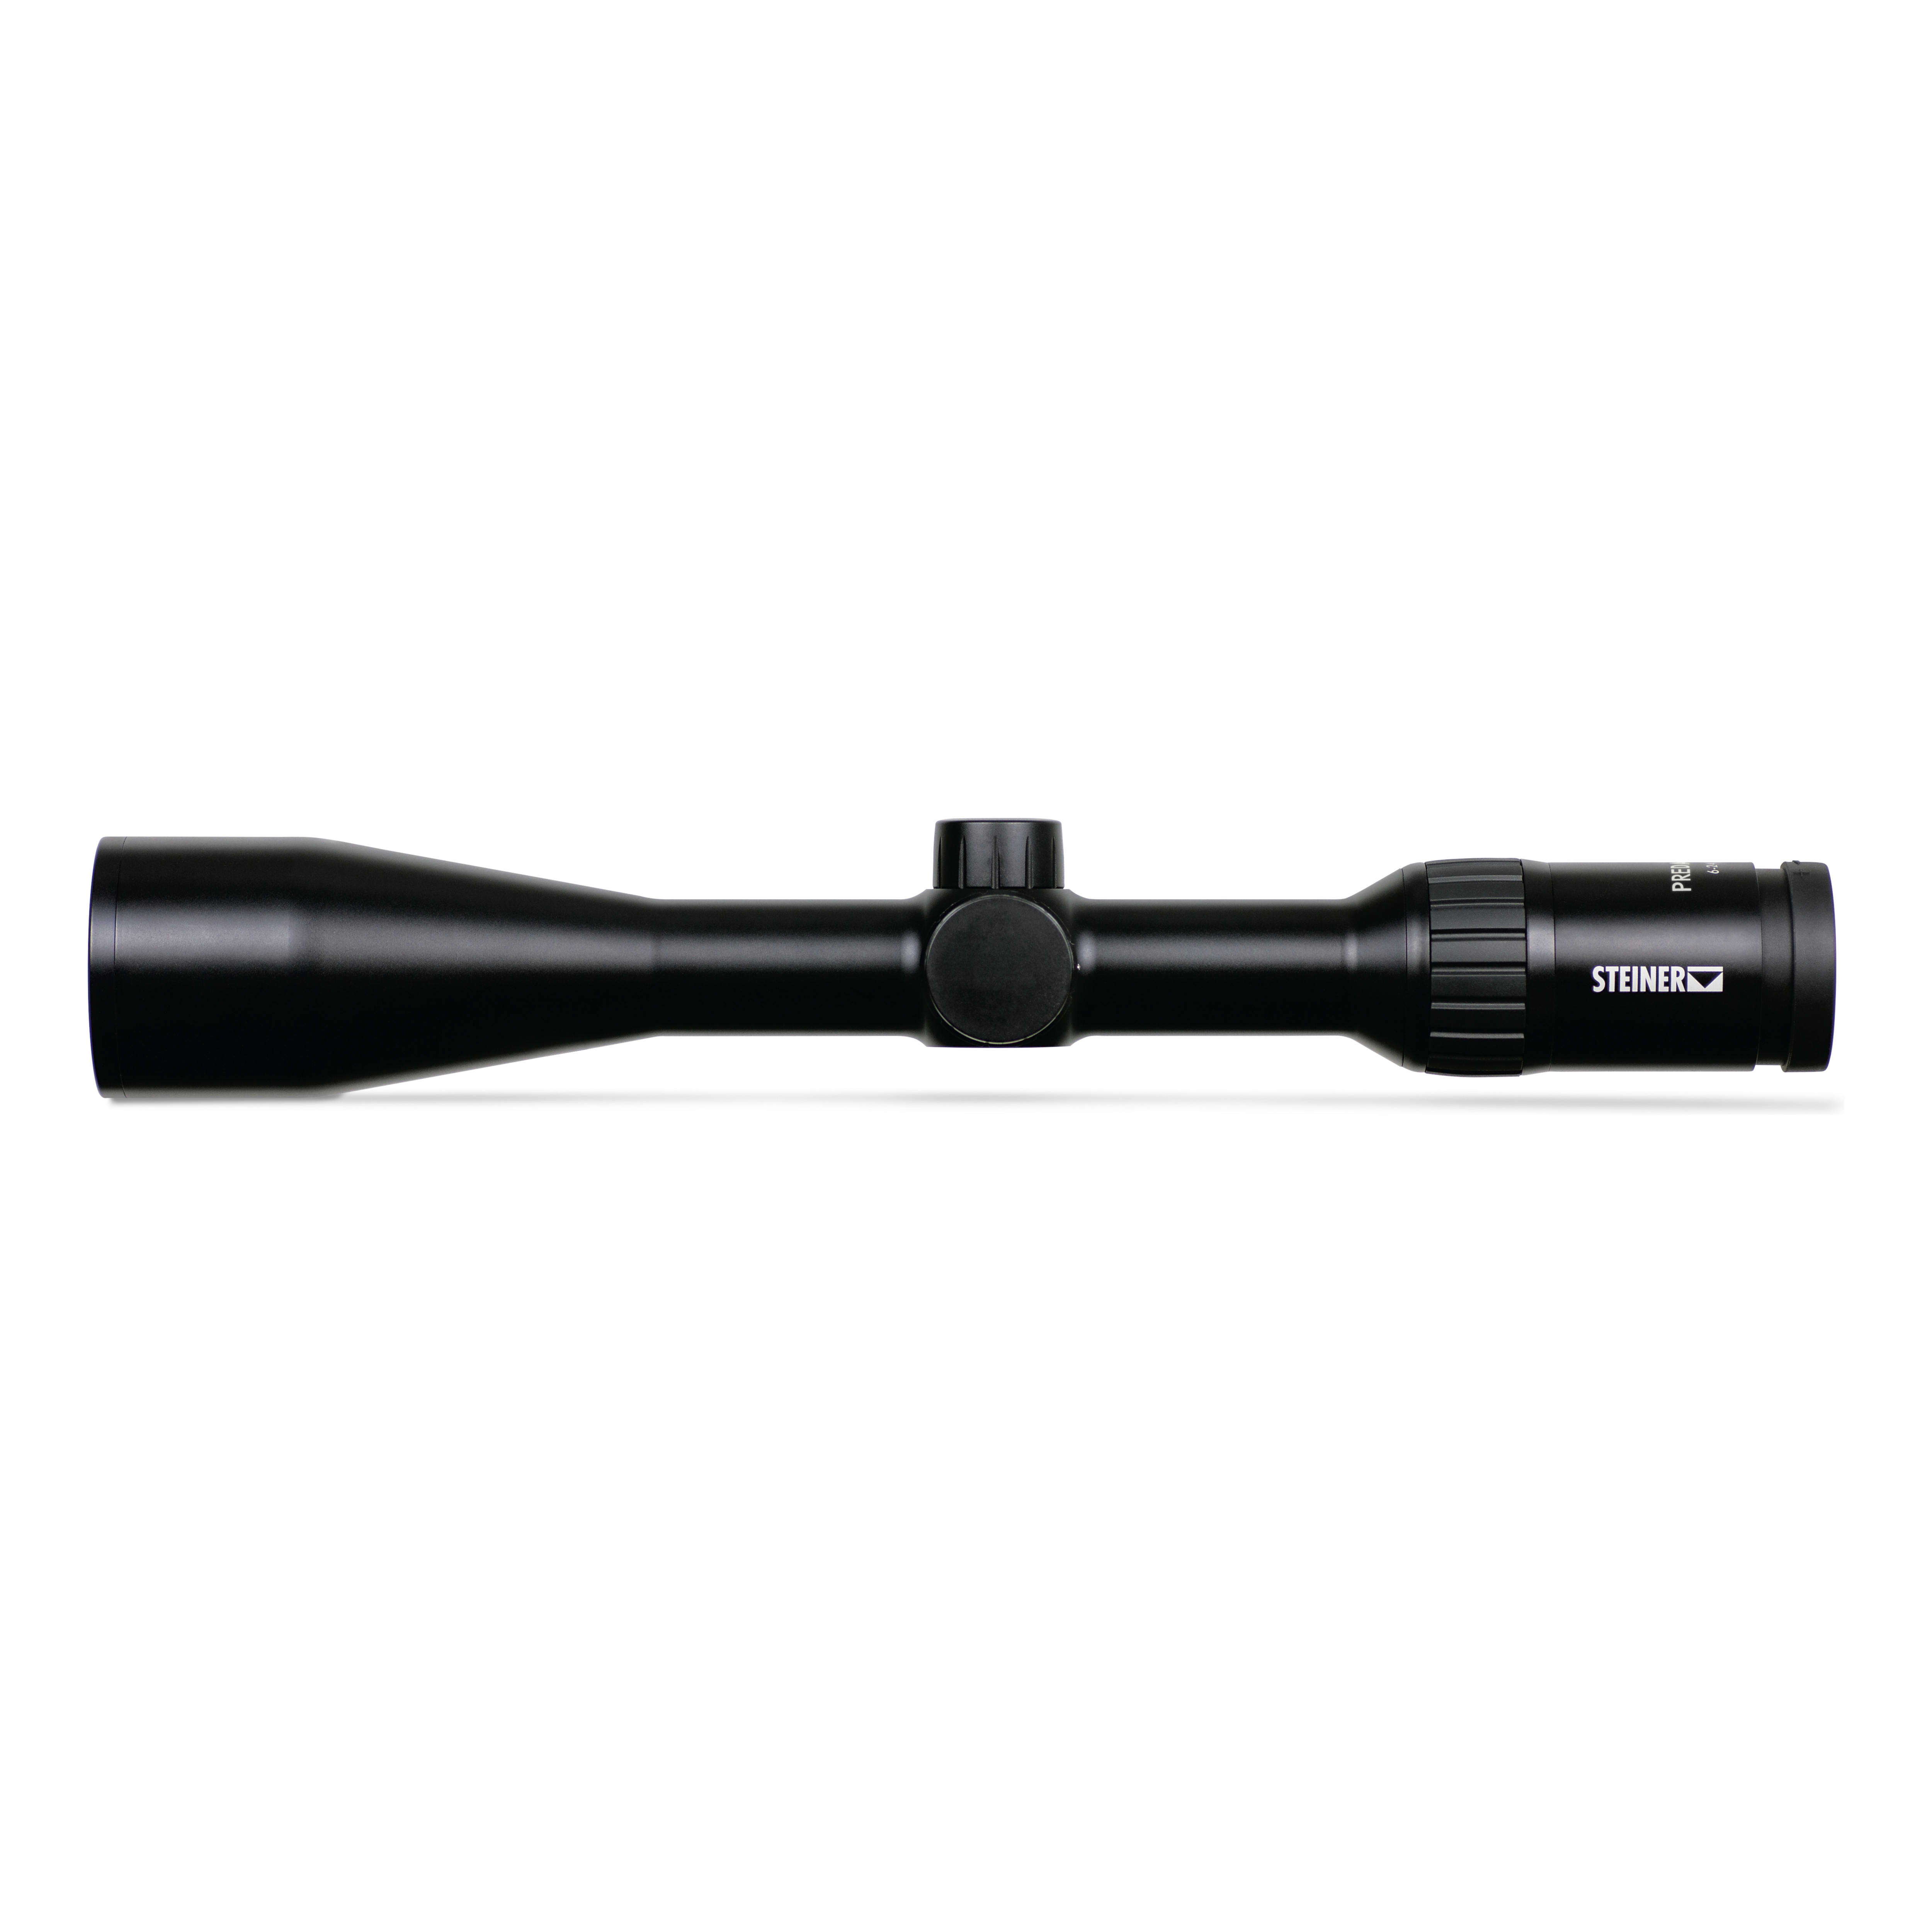 Steiner® Predator 4 Riflescopes - 6-24x50mm